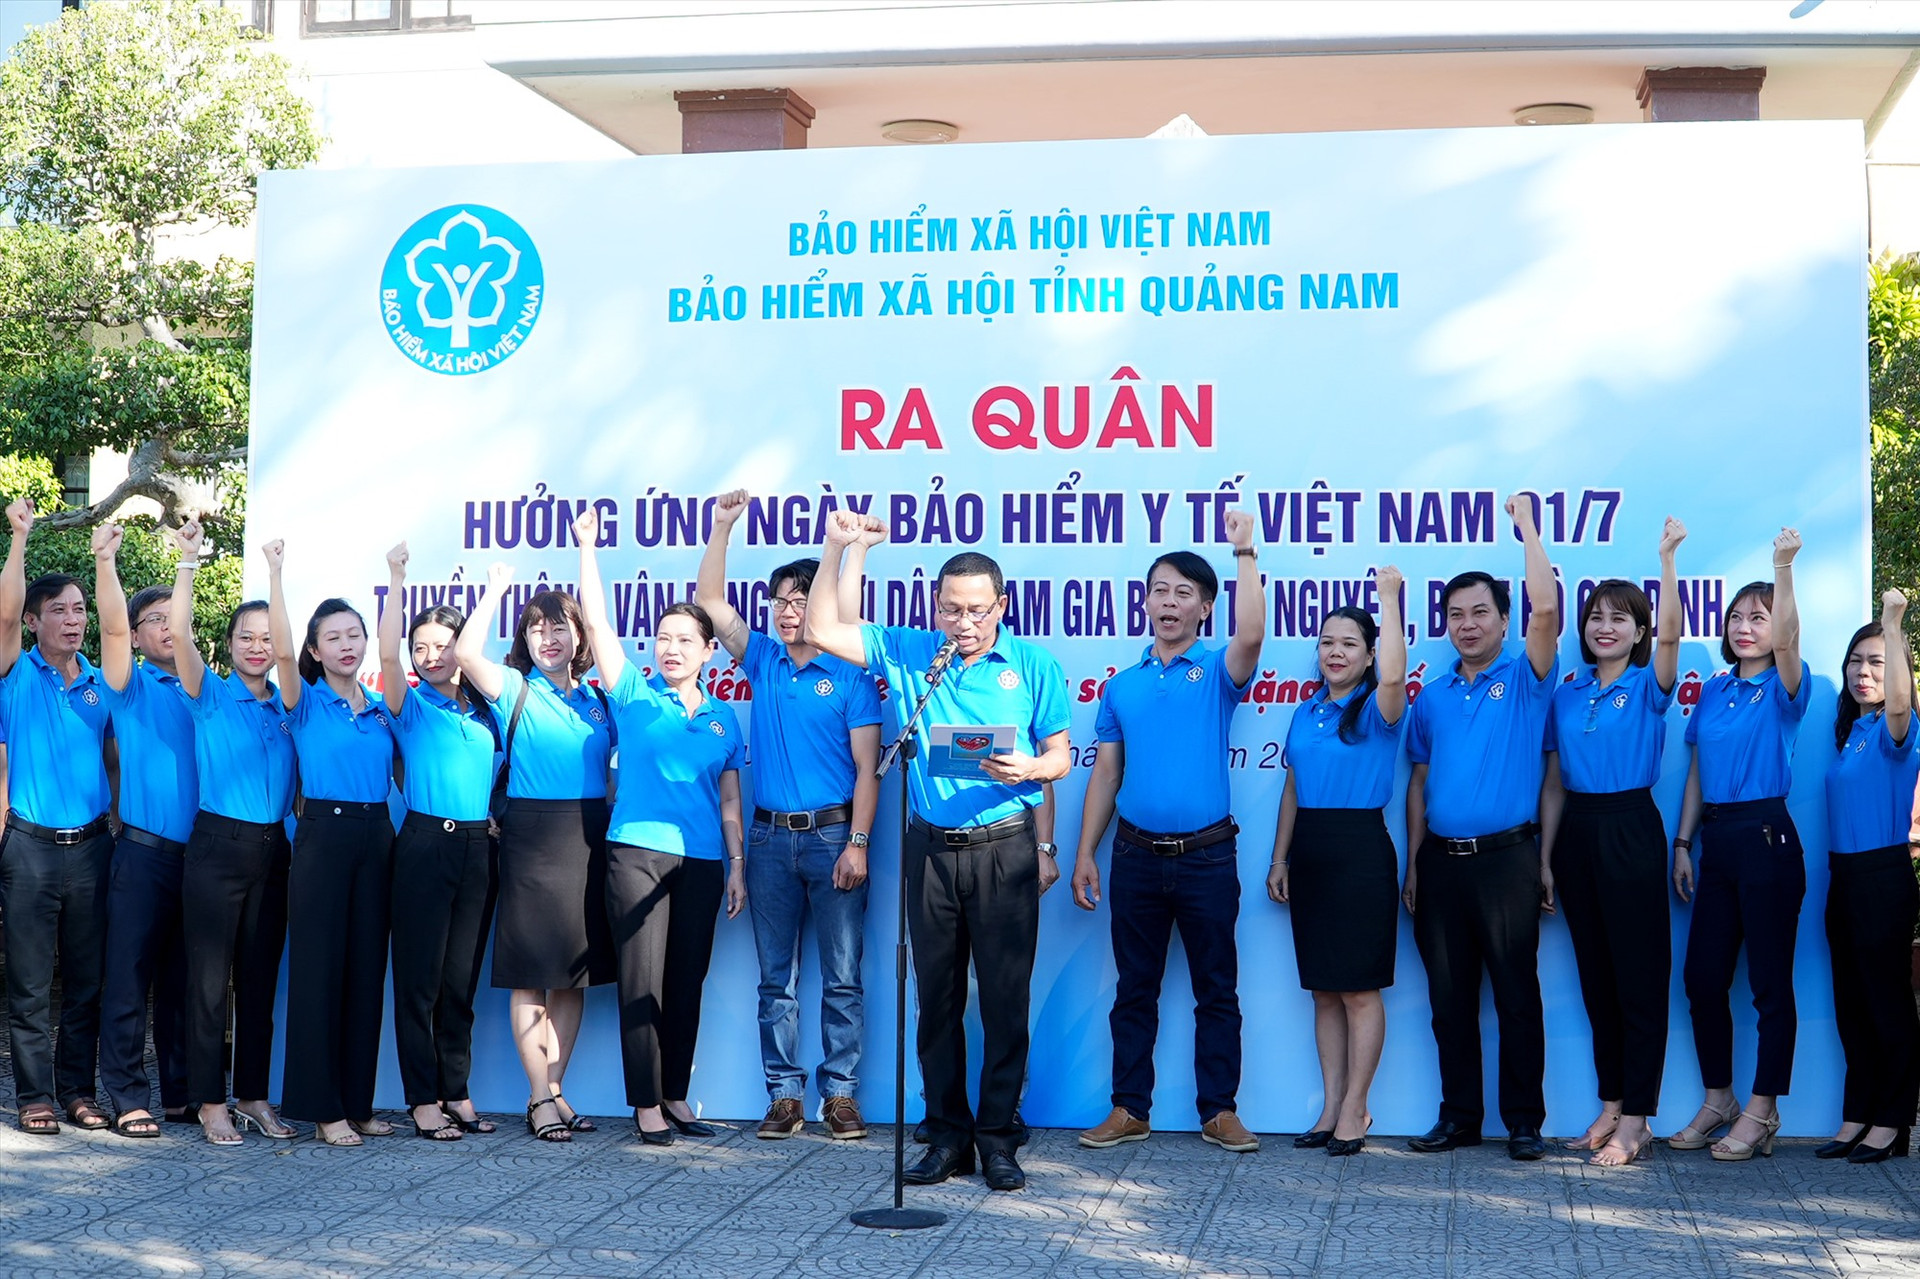 Ông Nguyễn Thanh Danh - Giám đốc BHXH Quảng Nam phát biểu tại buổi ra quân. Ảnh: H.Q